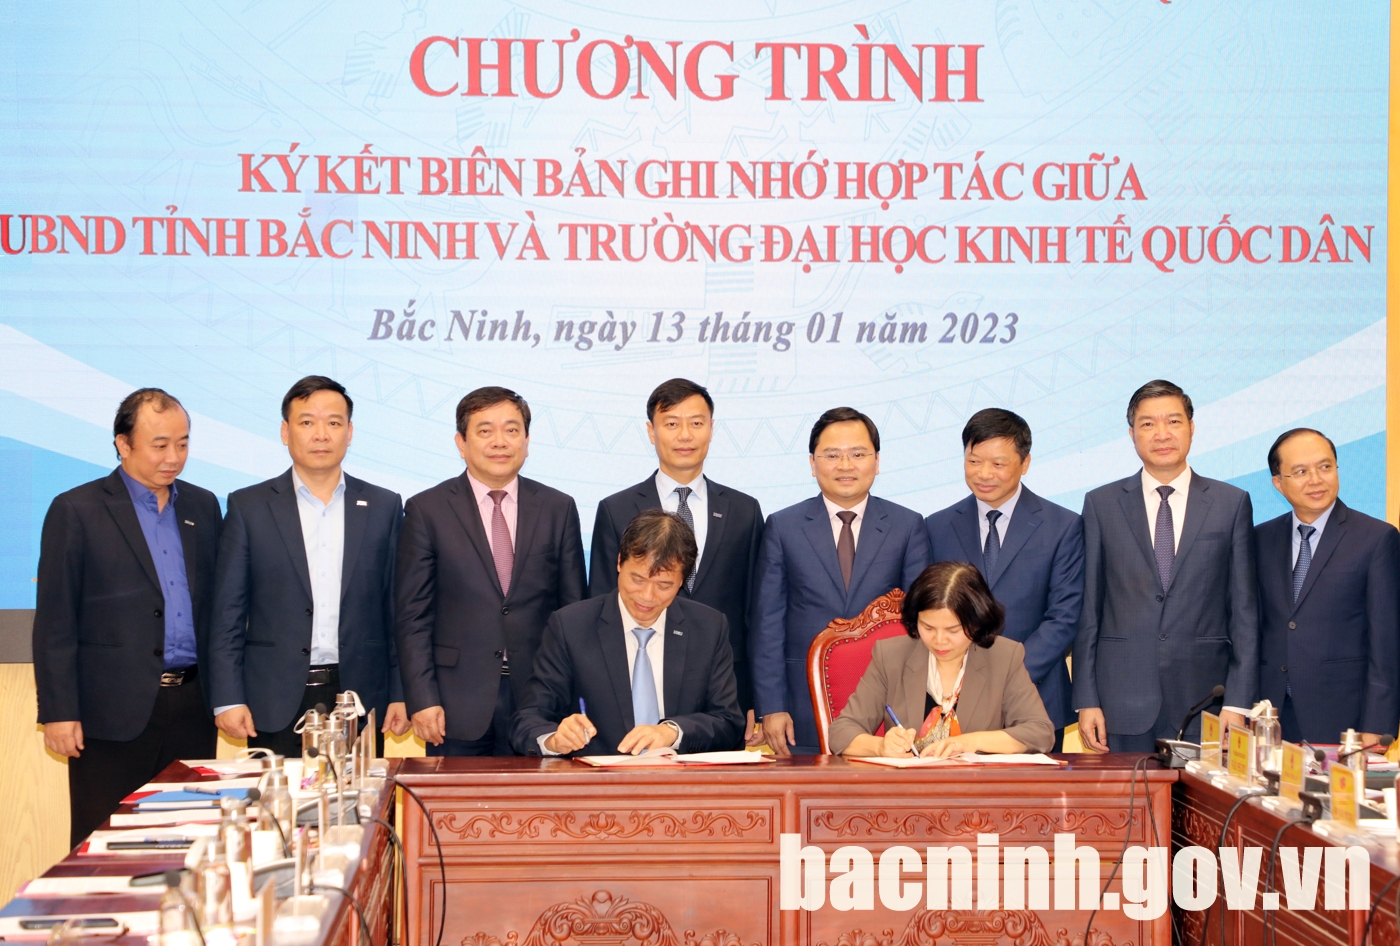 UBND tỉnh Bắc Ninh và Trường Đại học Kinh tế Quốc dân ký kết Biên bản ghi nhớ hợp tác